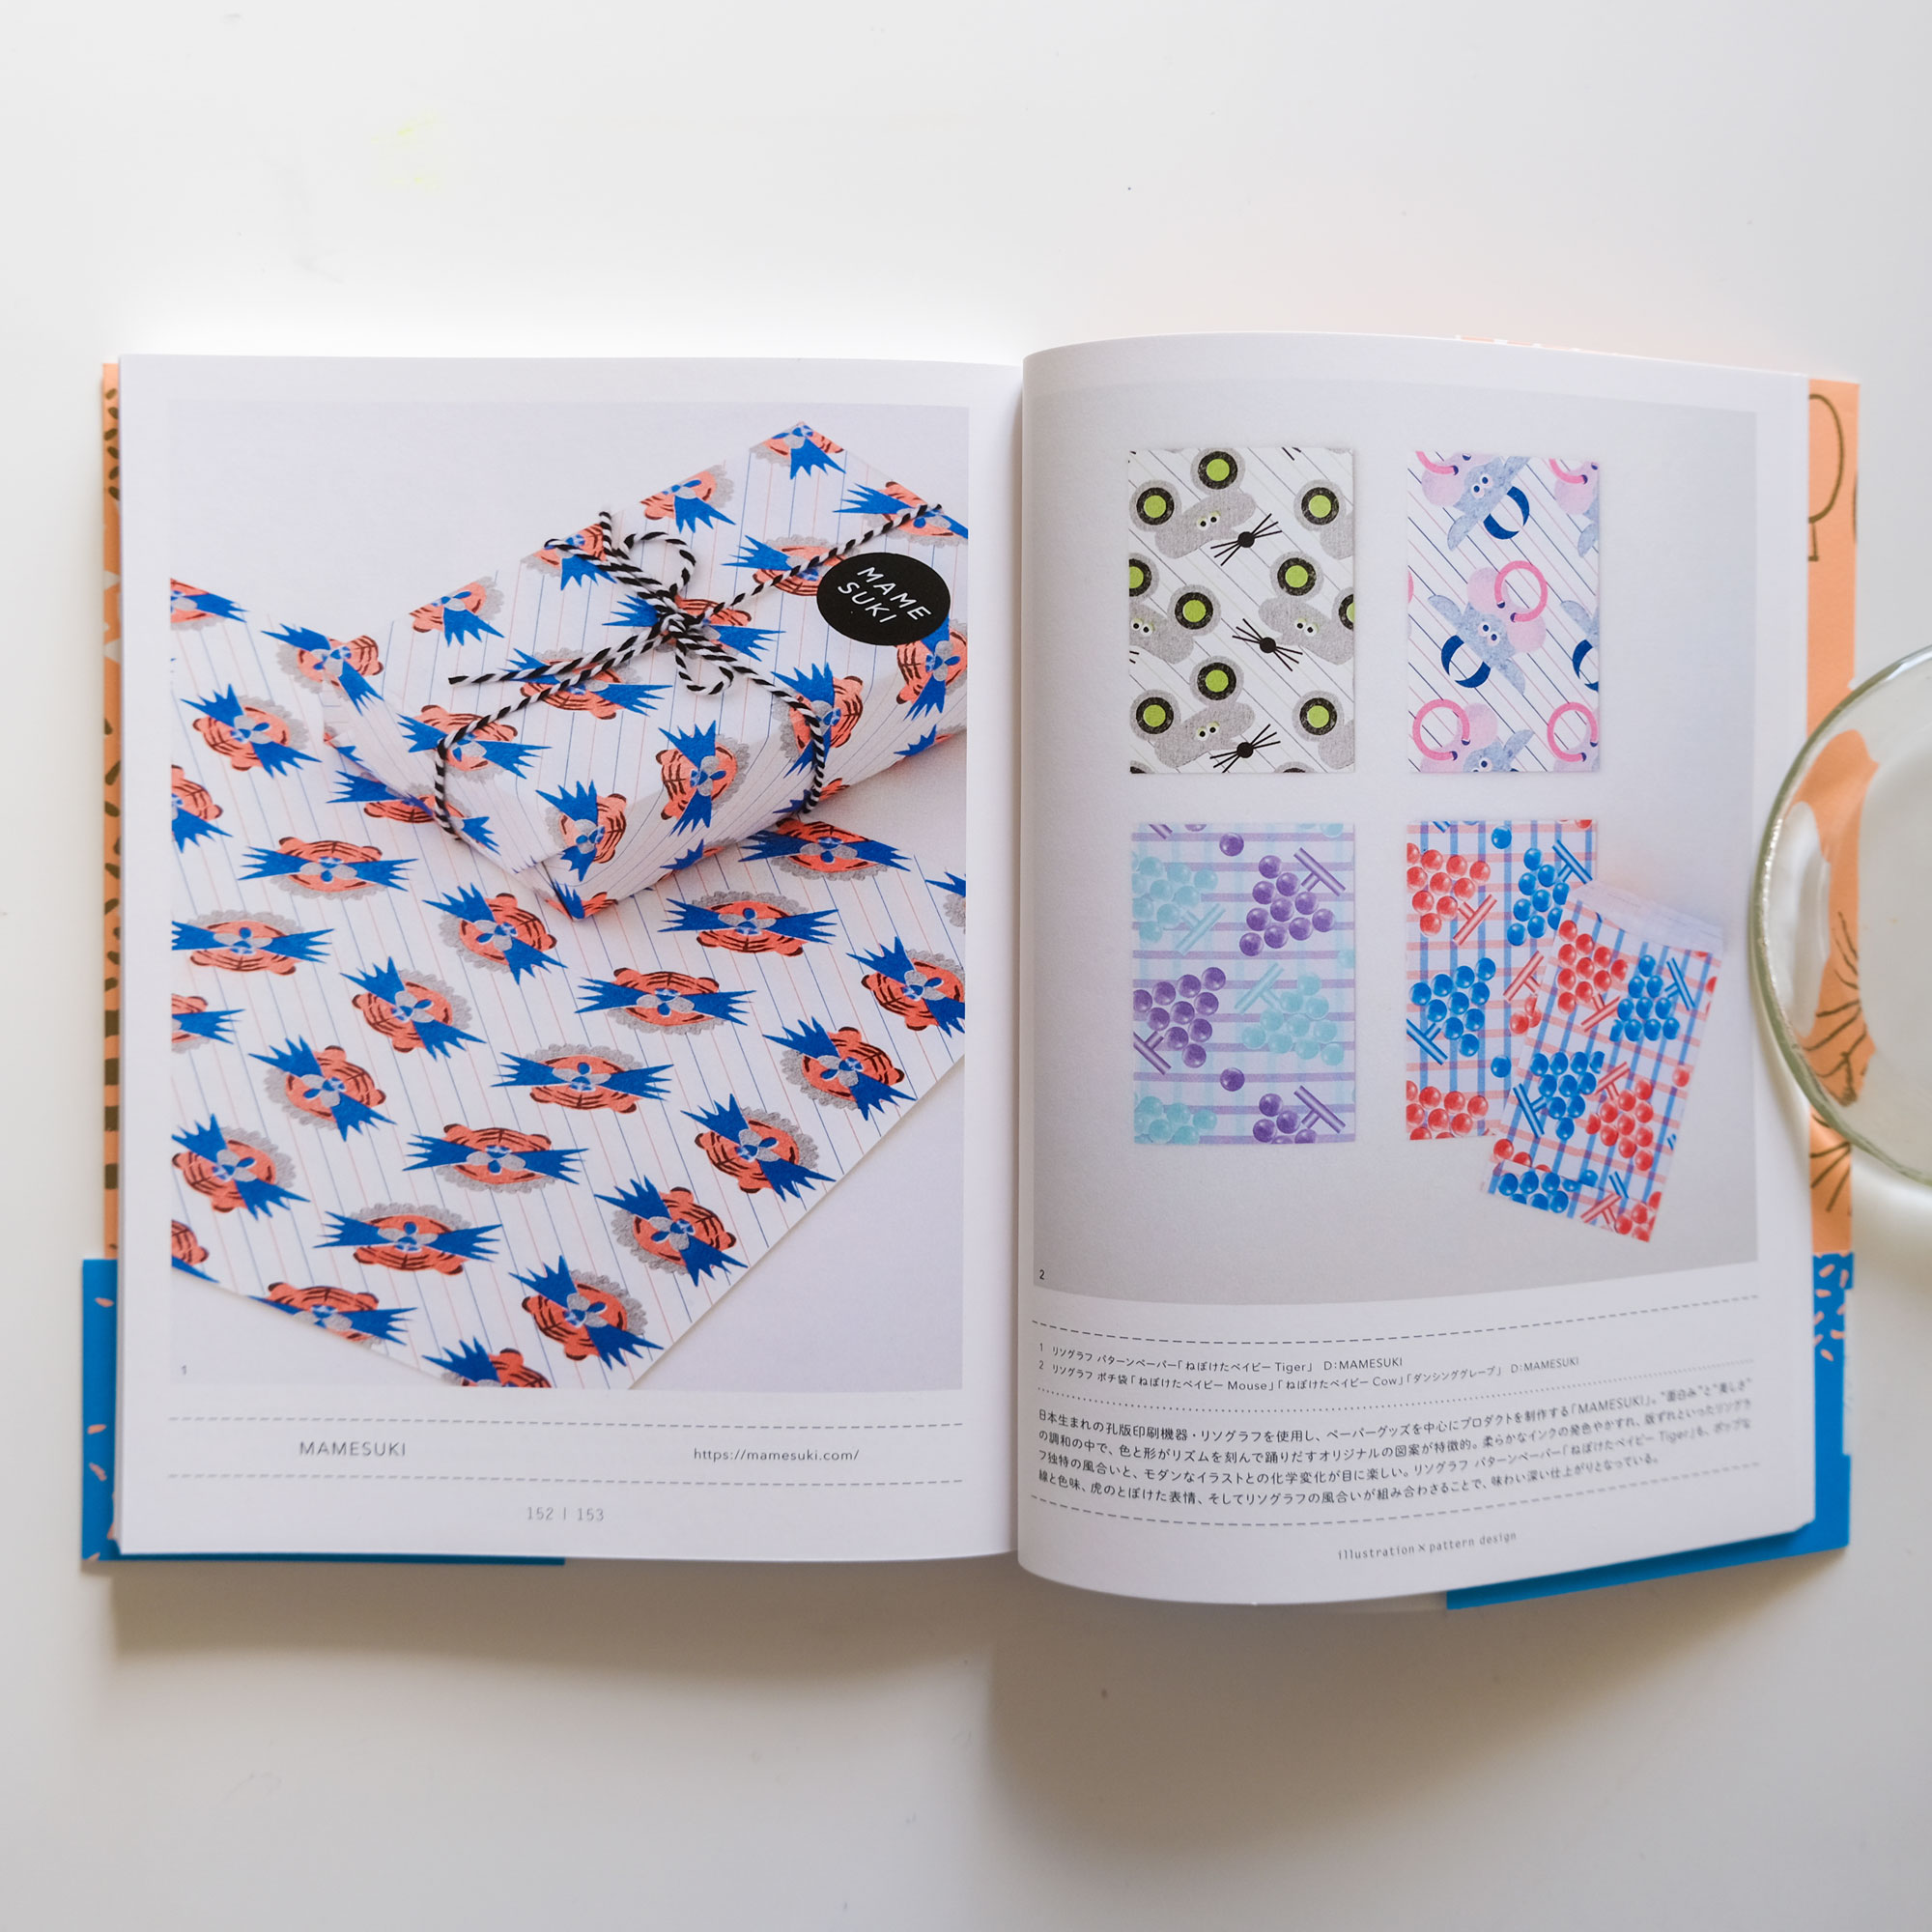 【メディア掲載のお知らせ】「イラストとパターンで魅せる かわいい布・紙・こもののデザイン」